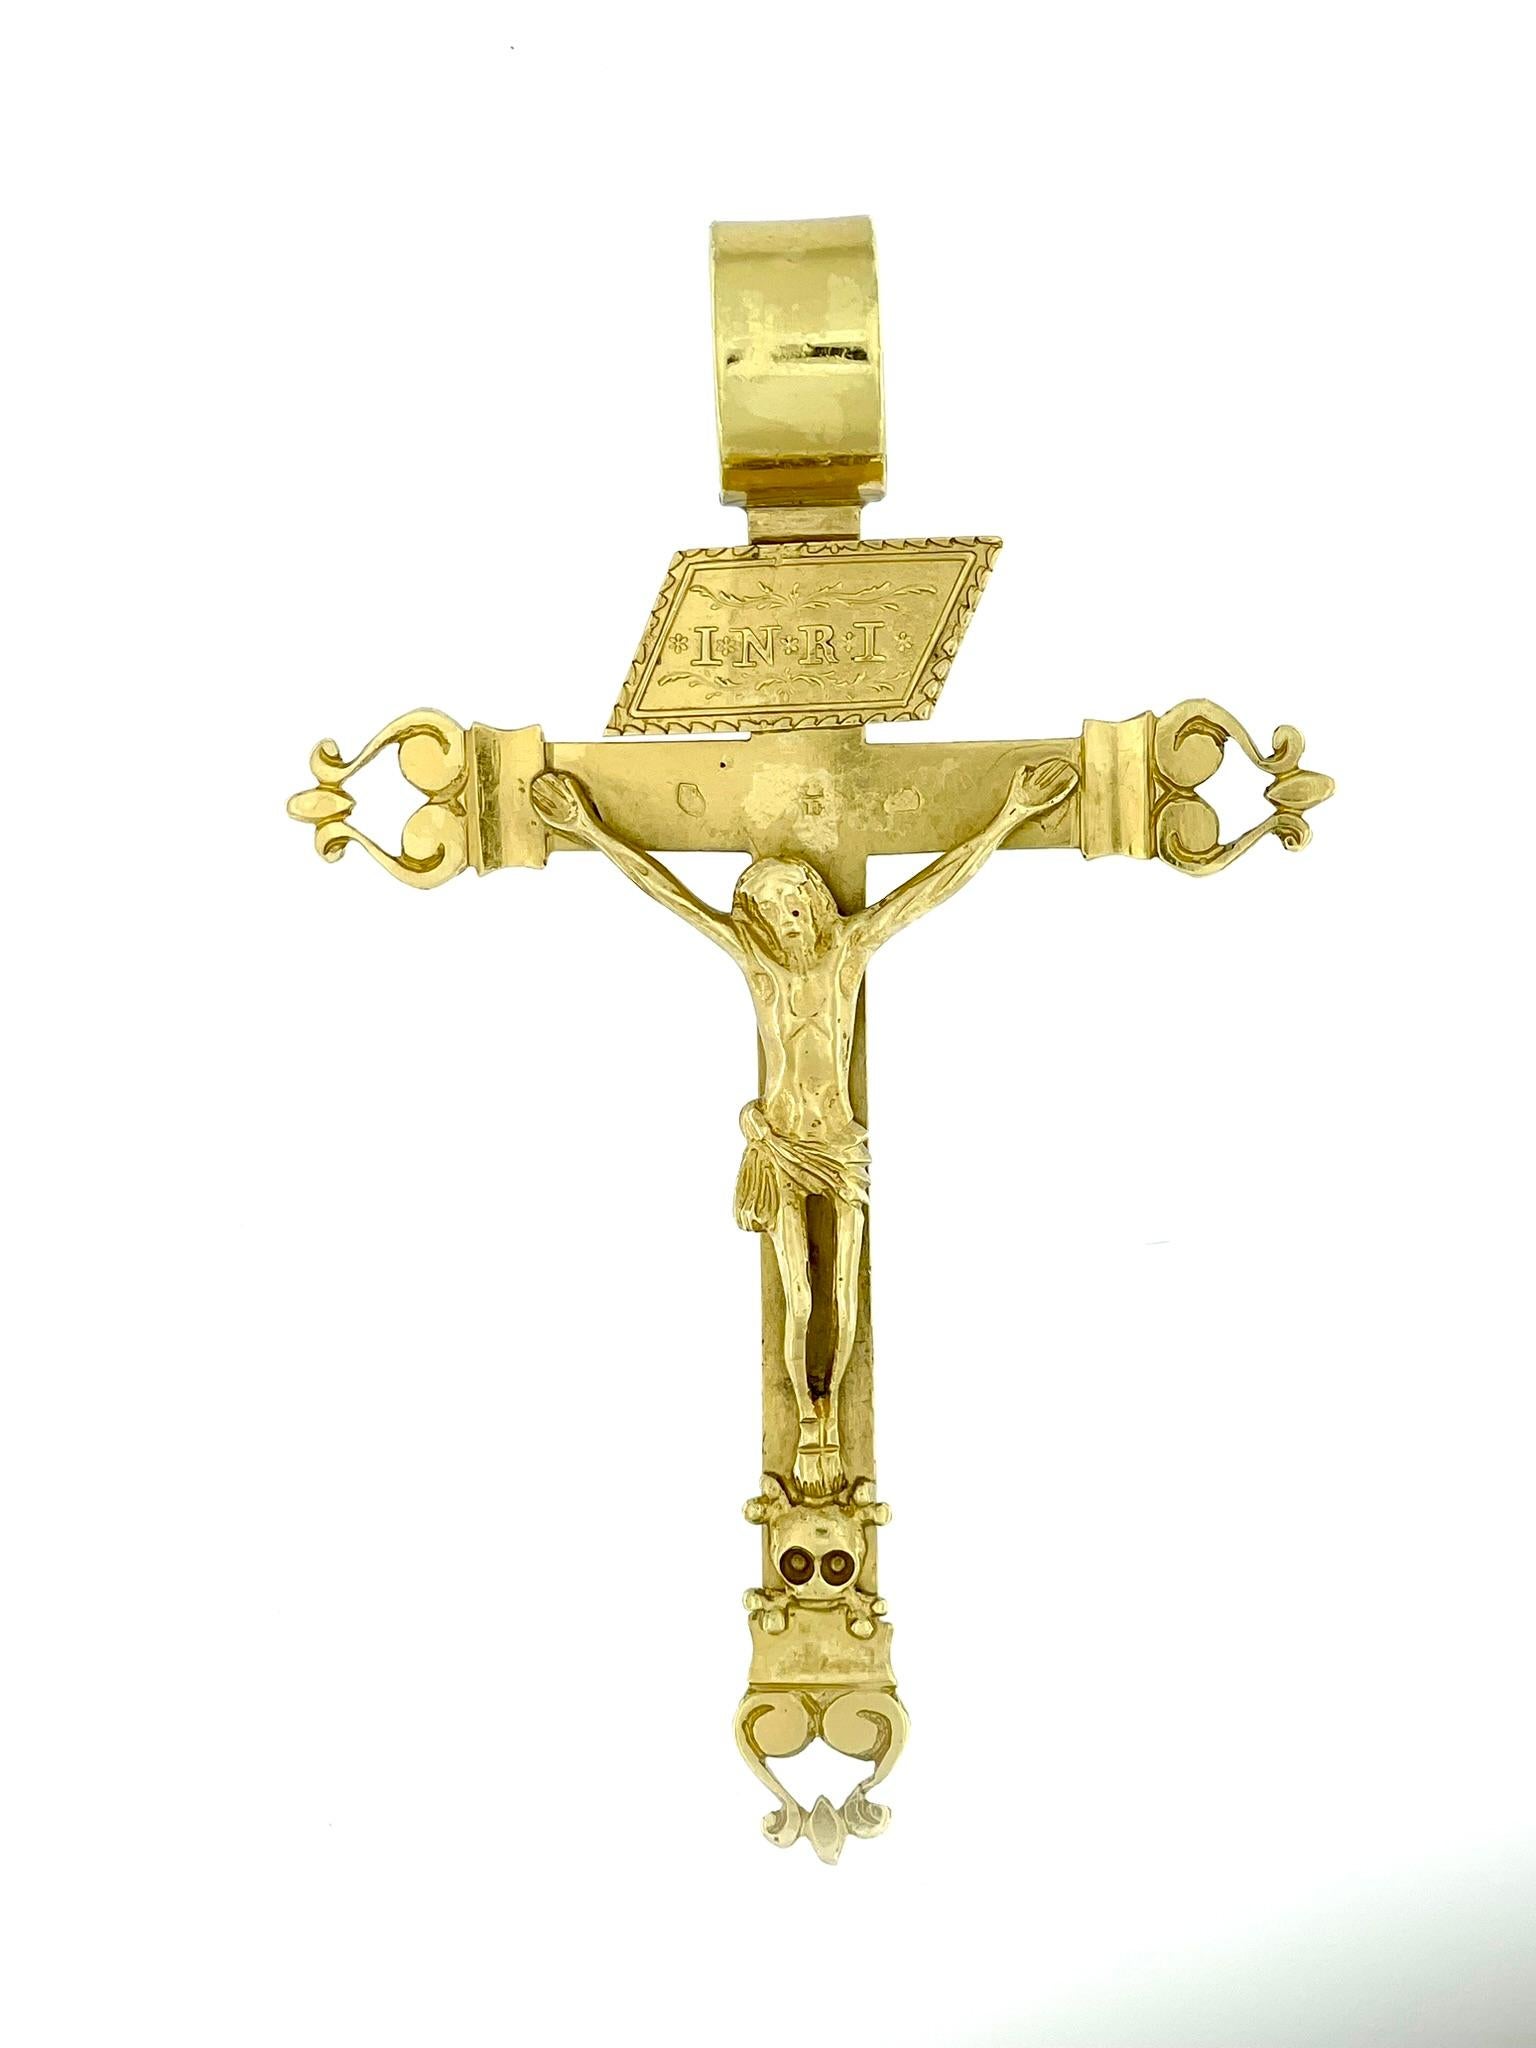 Le Crucifix Retro Italian en or jaune 18kt est un bijou religieux intemporel et exquis qui capture l'essence de l'artisanat traditionnel. Fabriqué en or jaune 18 carats de haute qualité, ce crucifix arbore une couleur riche et chaude qui ajoute une